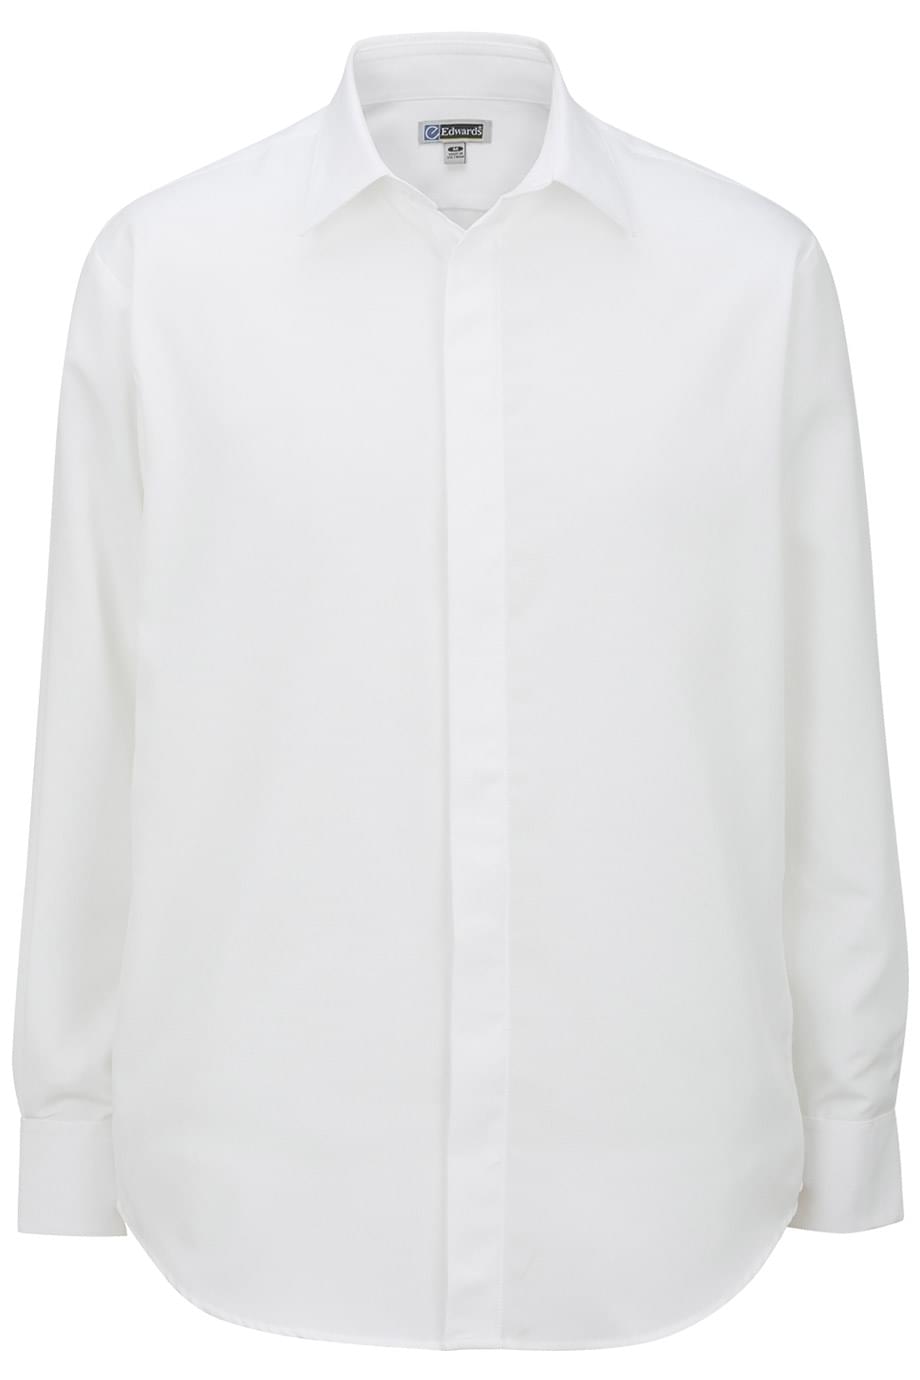 Edwards Garment 1291 - Batiste Cafe Shirt